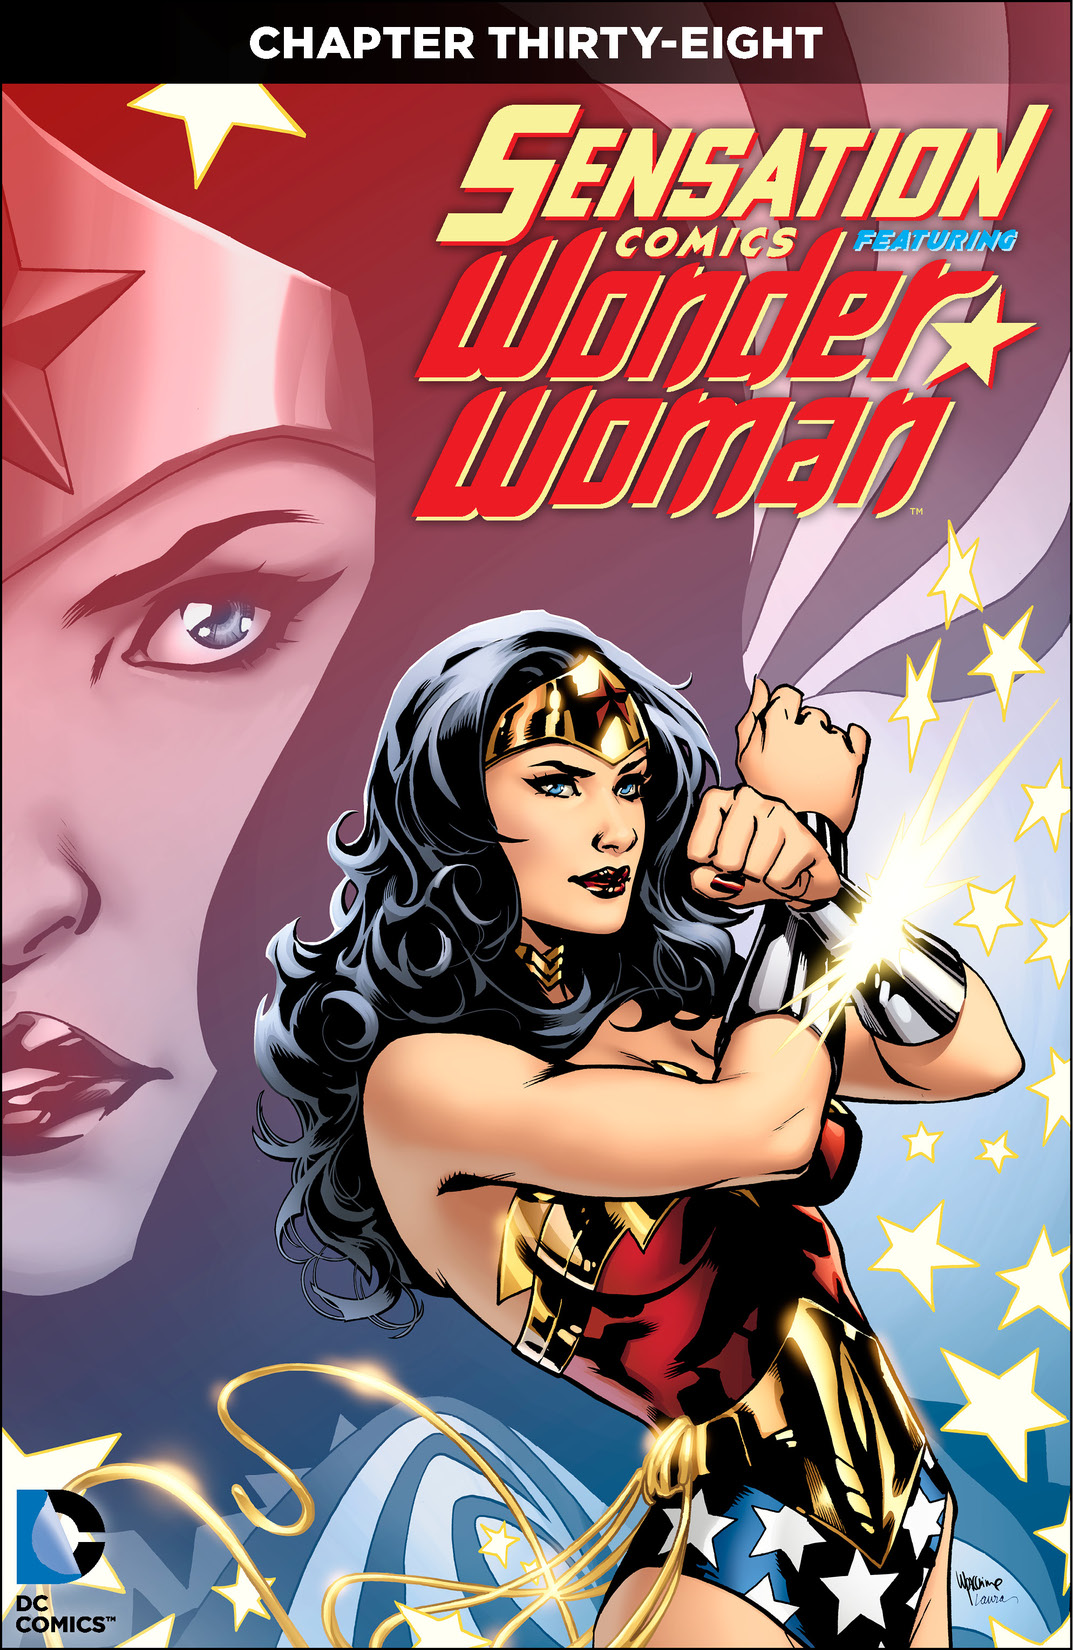 Sensation Comics Featuring Wonder Woman #38 preview images